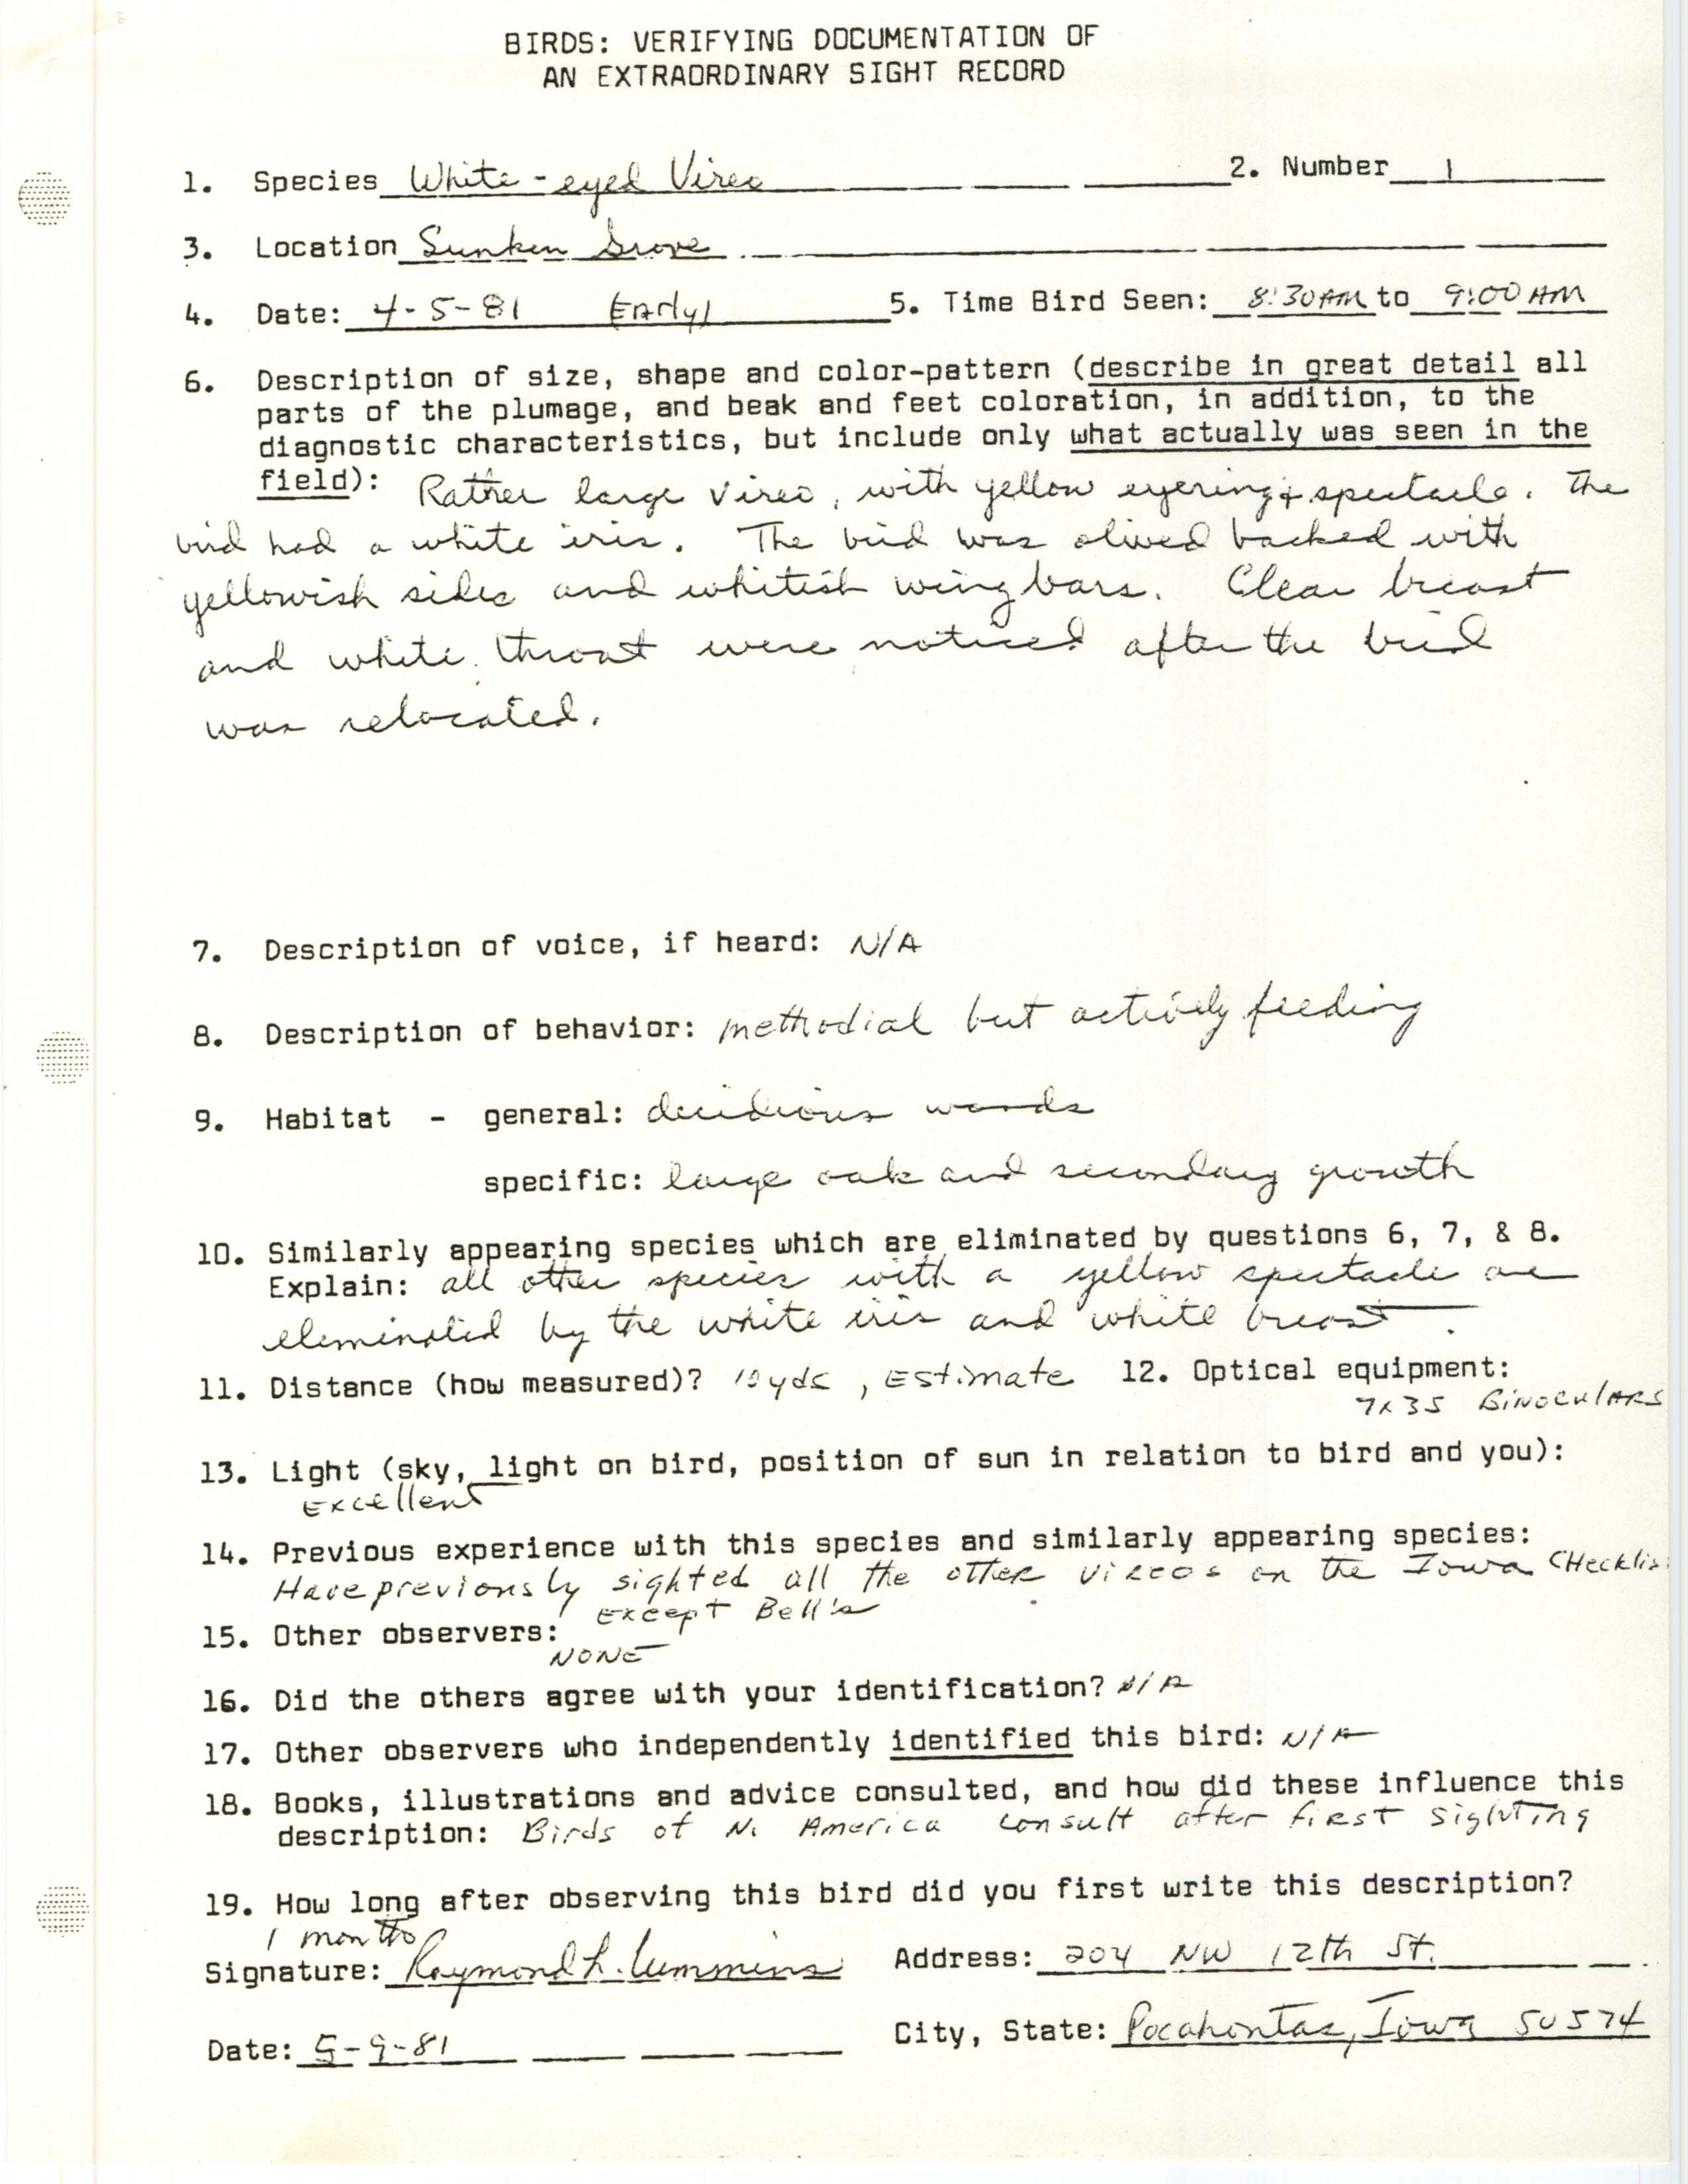 Rare bird documentation form for White-eyed Vireo at Sunken Grove, 1981